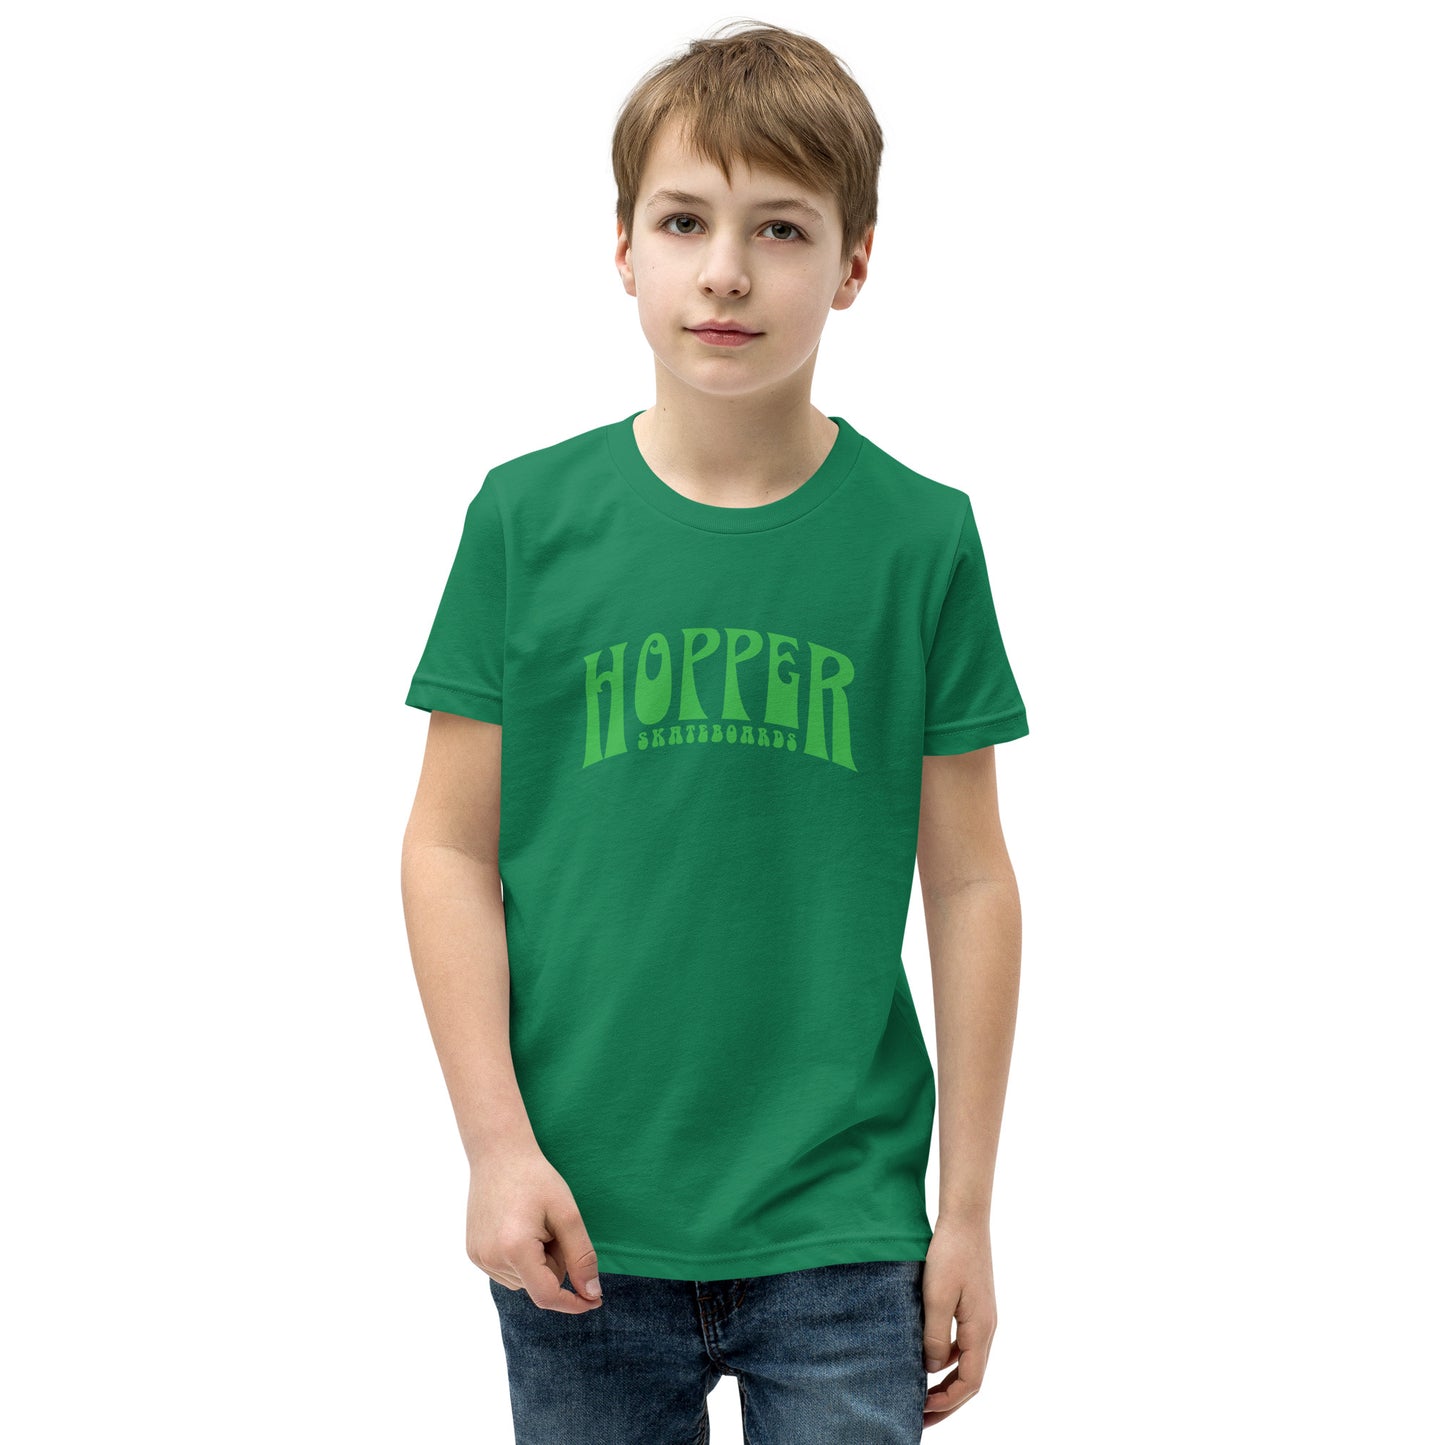 Hopper Top Youth Short Sleeve T-Shirt